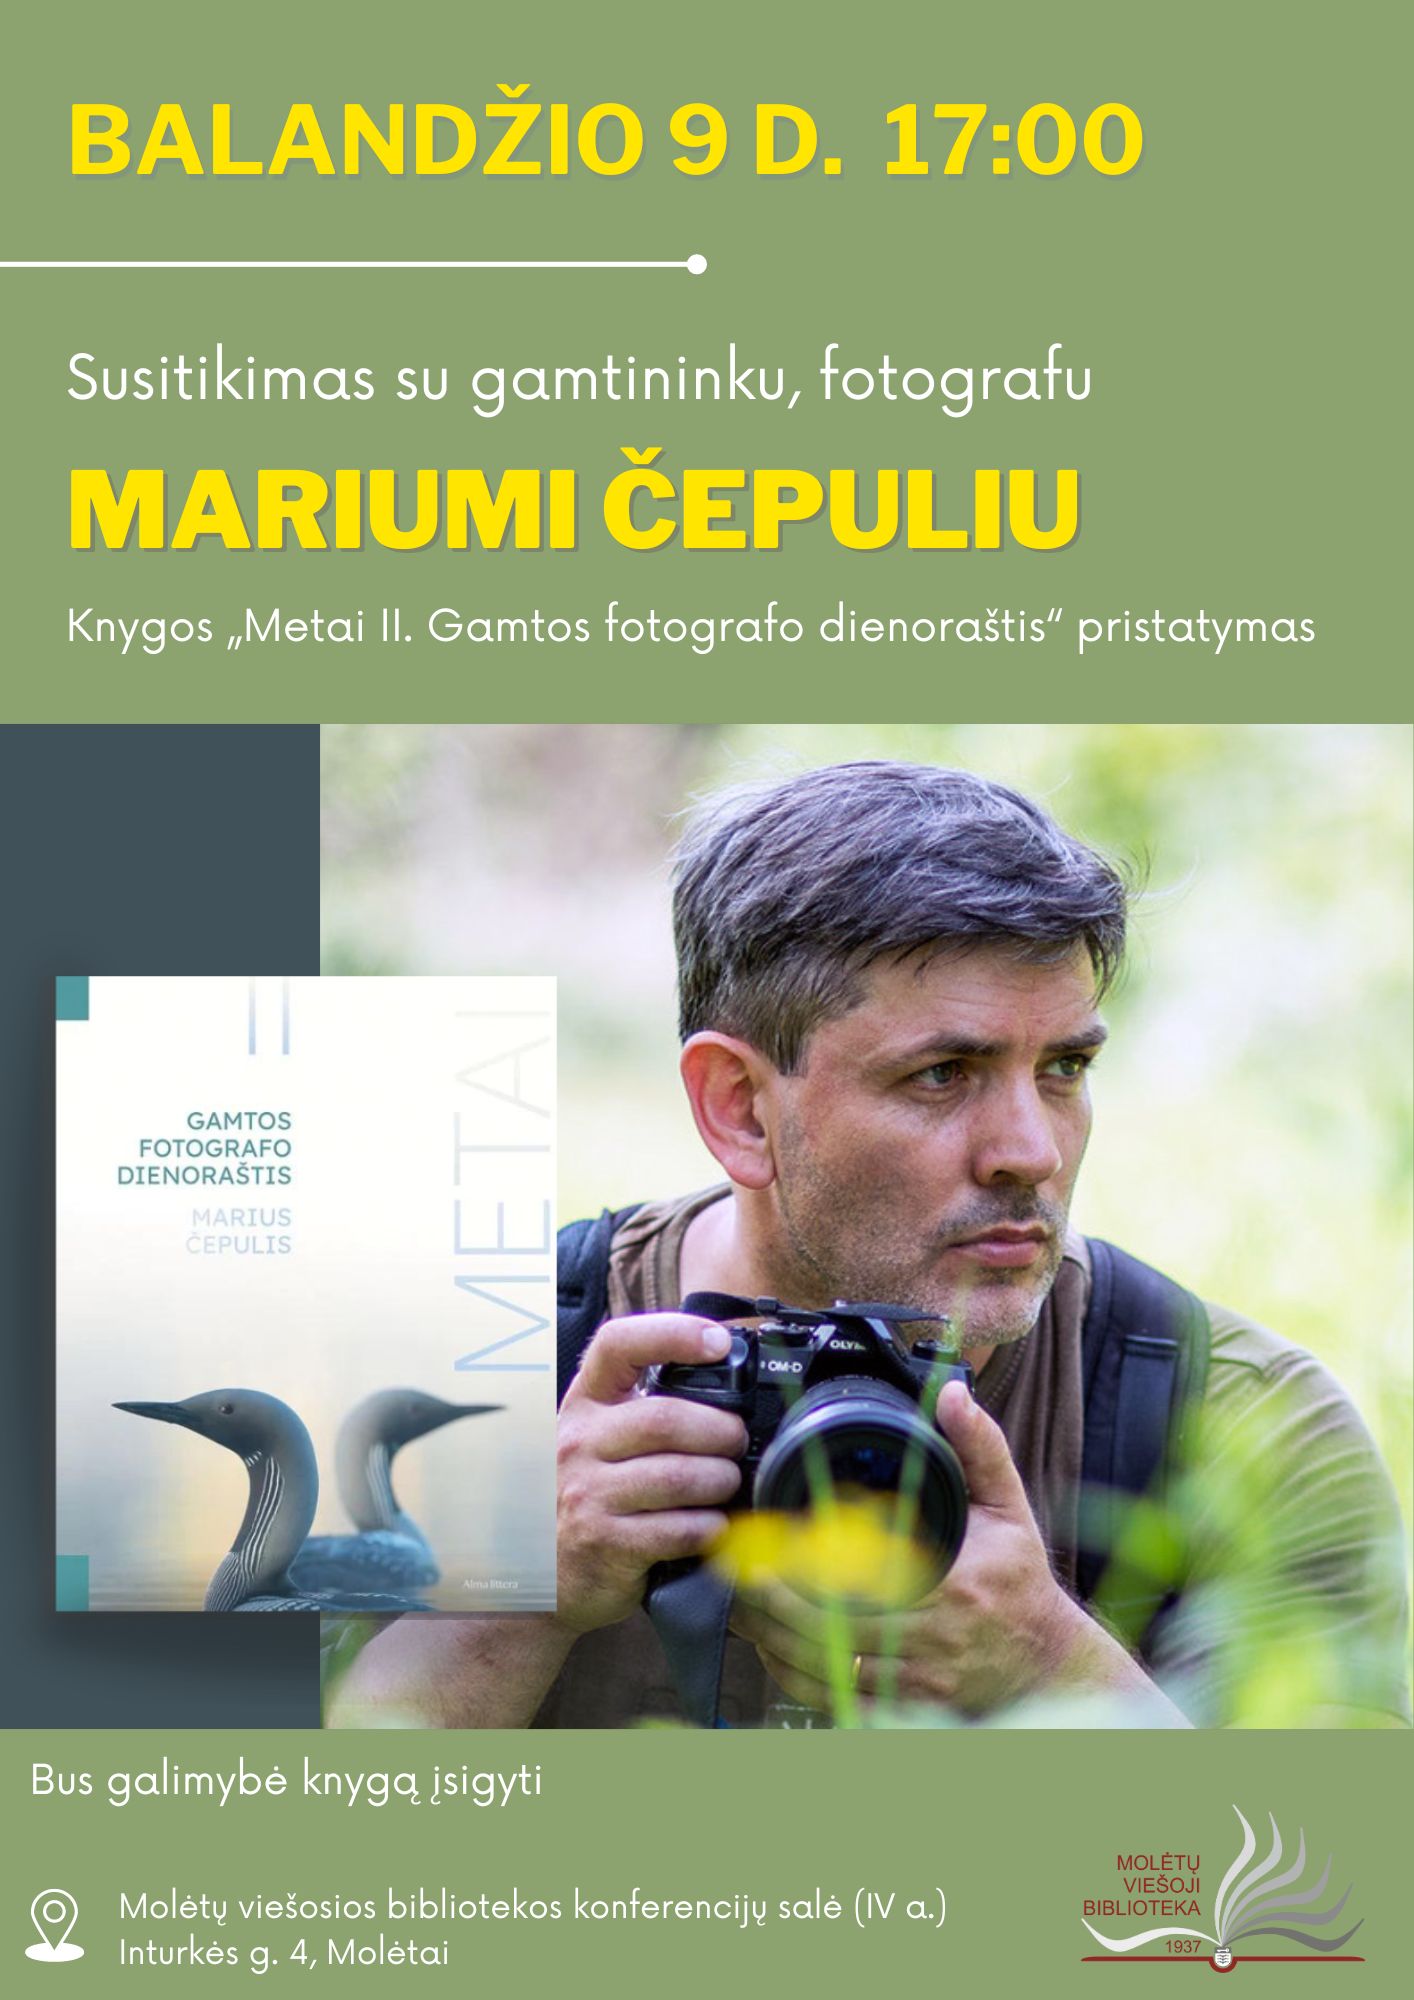 Susitikimas su Mariumi Čepuliu, knygos „Metai. Gamtos fotografo dienoraštis“ pristatymas